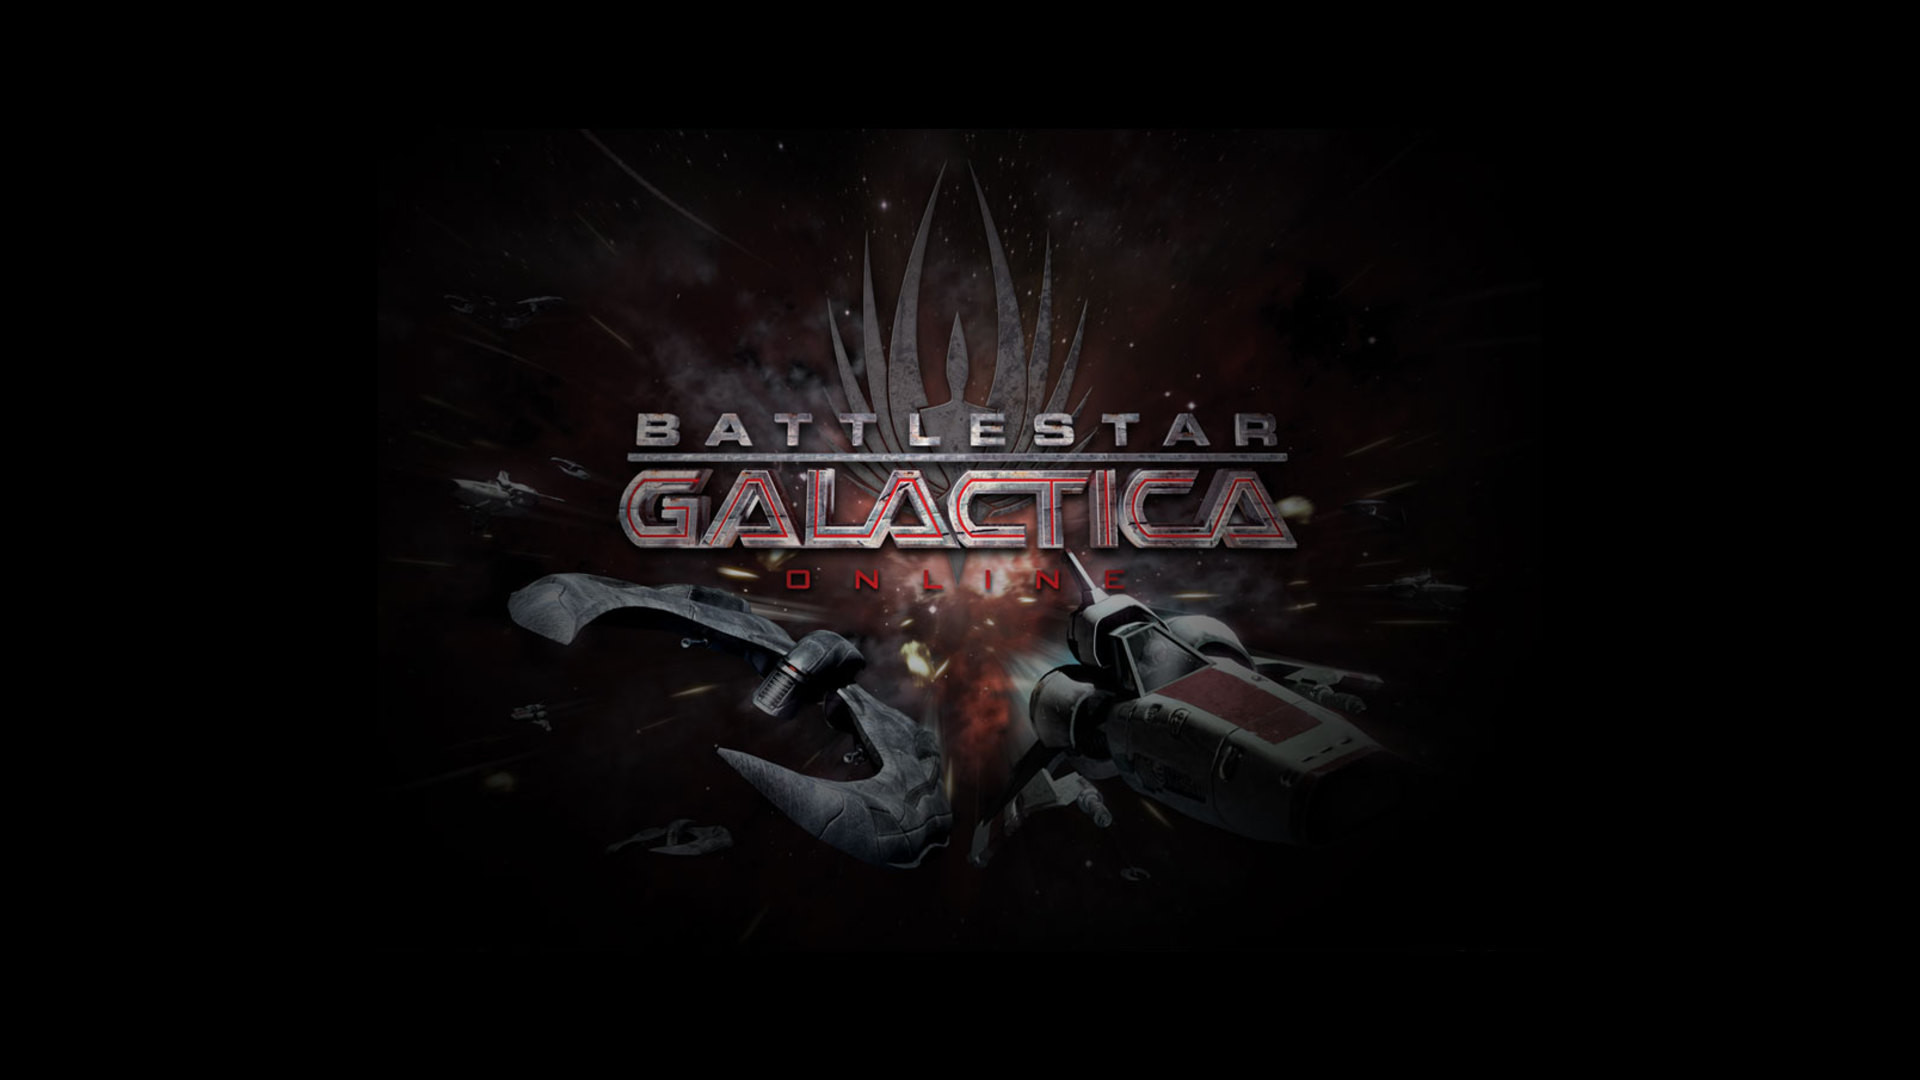 1920x1080 battlestar galactica wallpaper hd